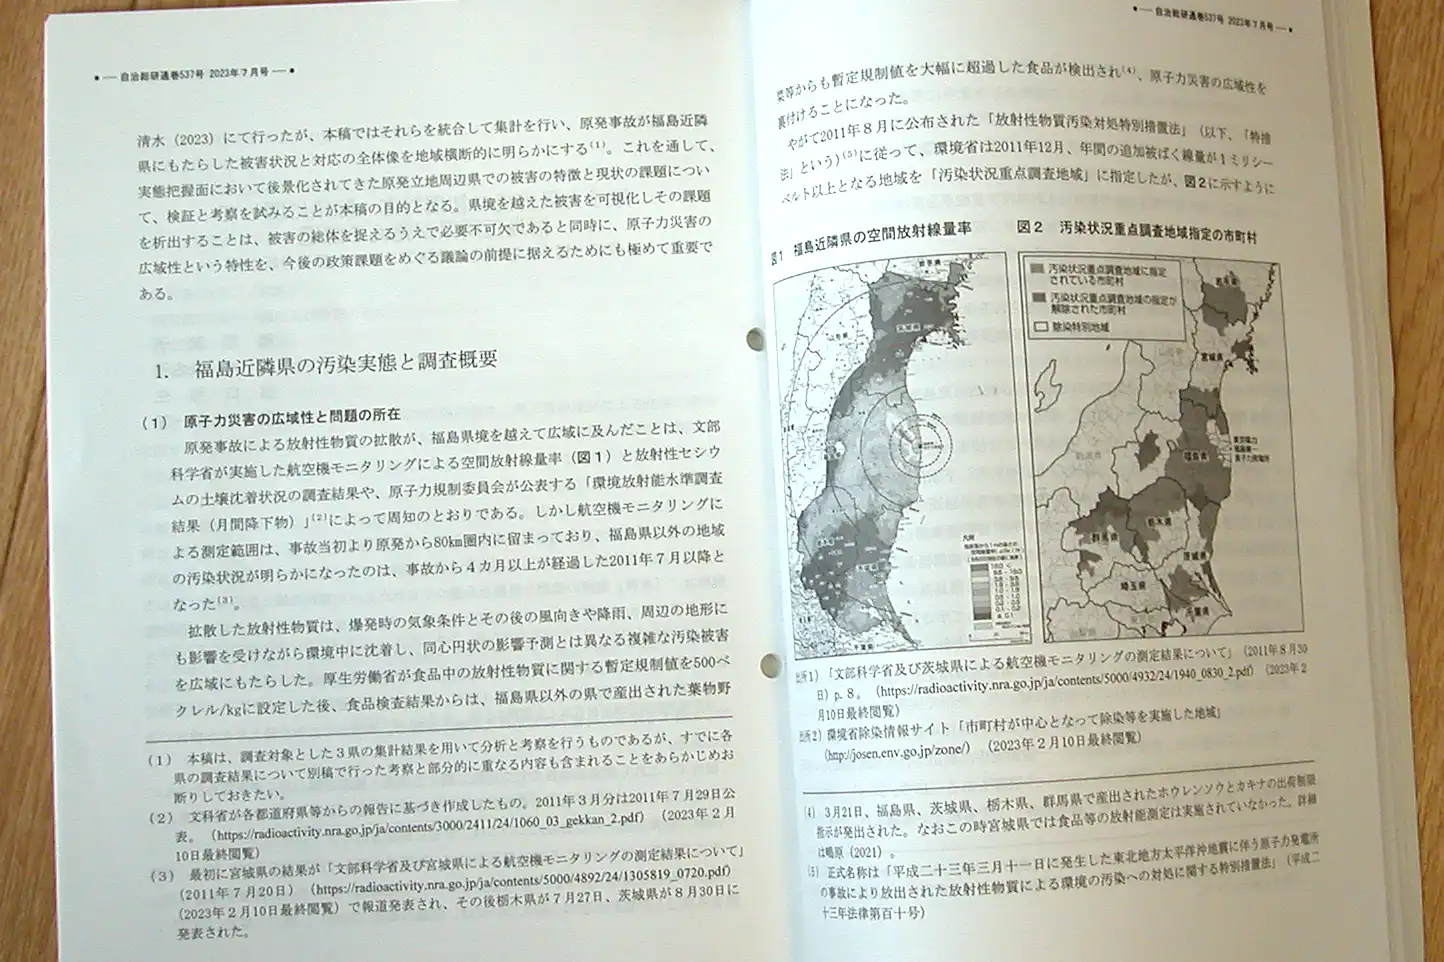 福島近隣3県の市町村に対し原子力災害に関する詳細なアンケートを実施、分析した「自治総研」2023年7月号の投稿論文